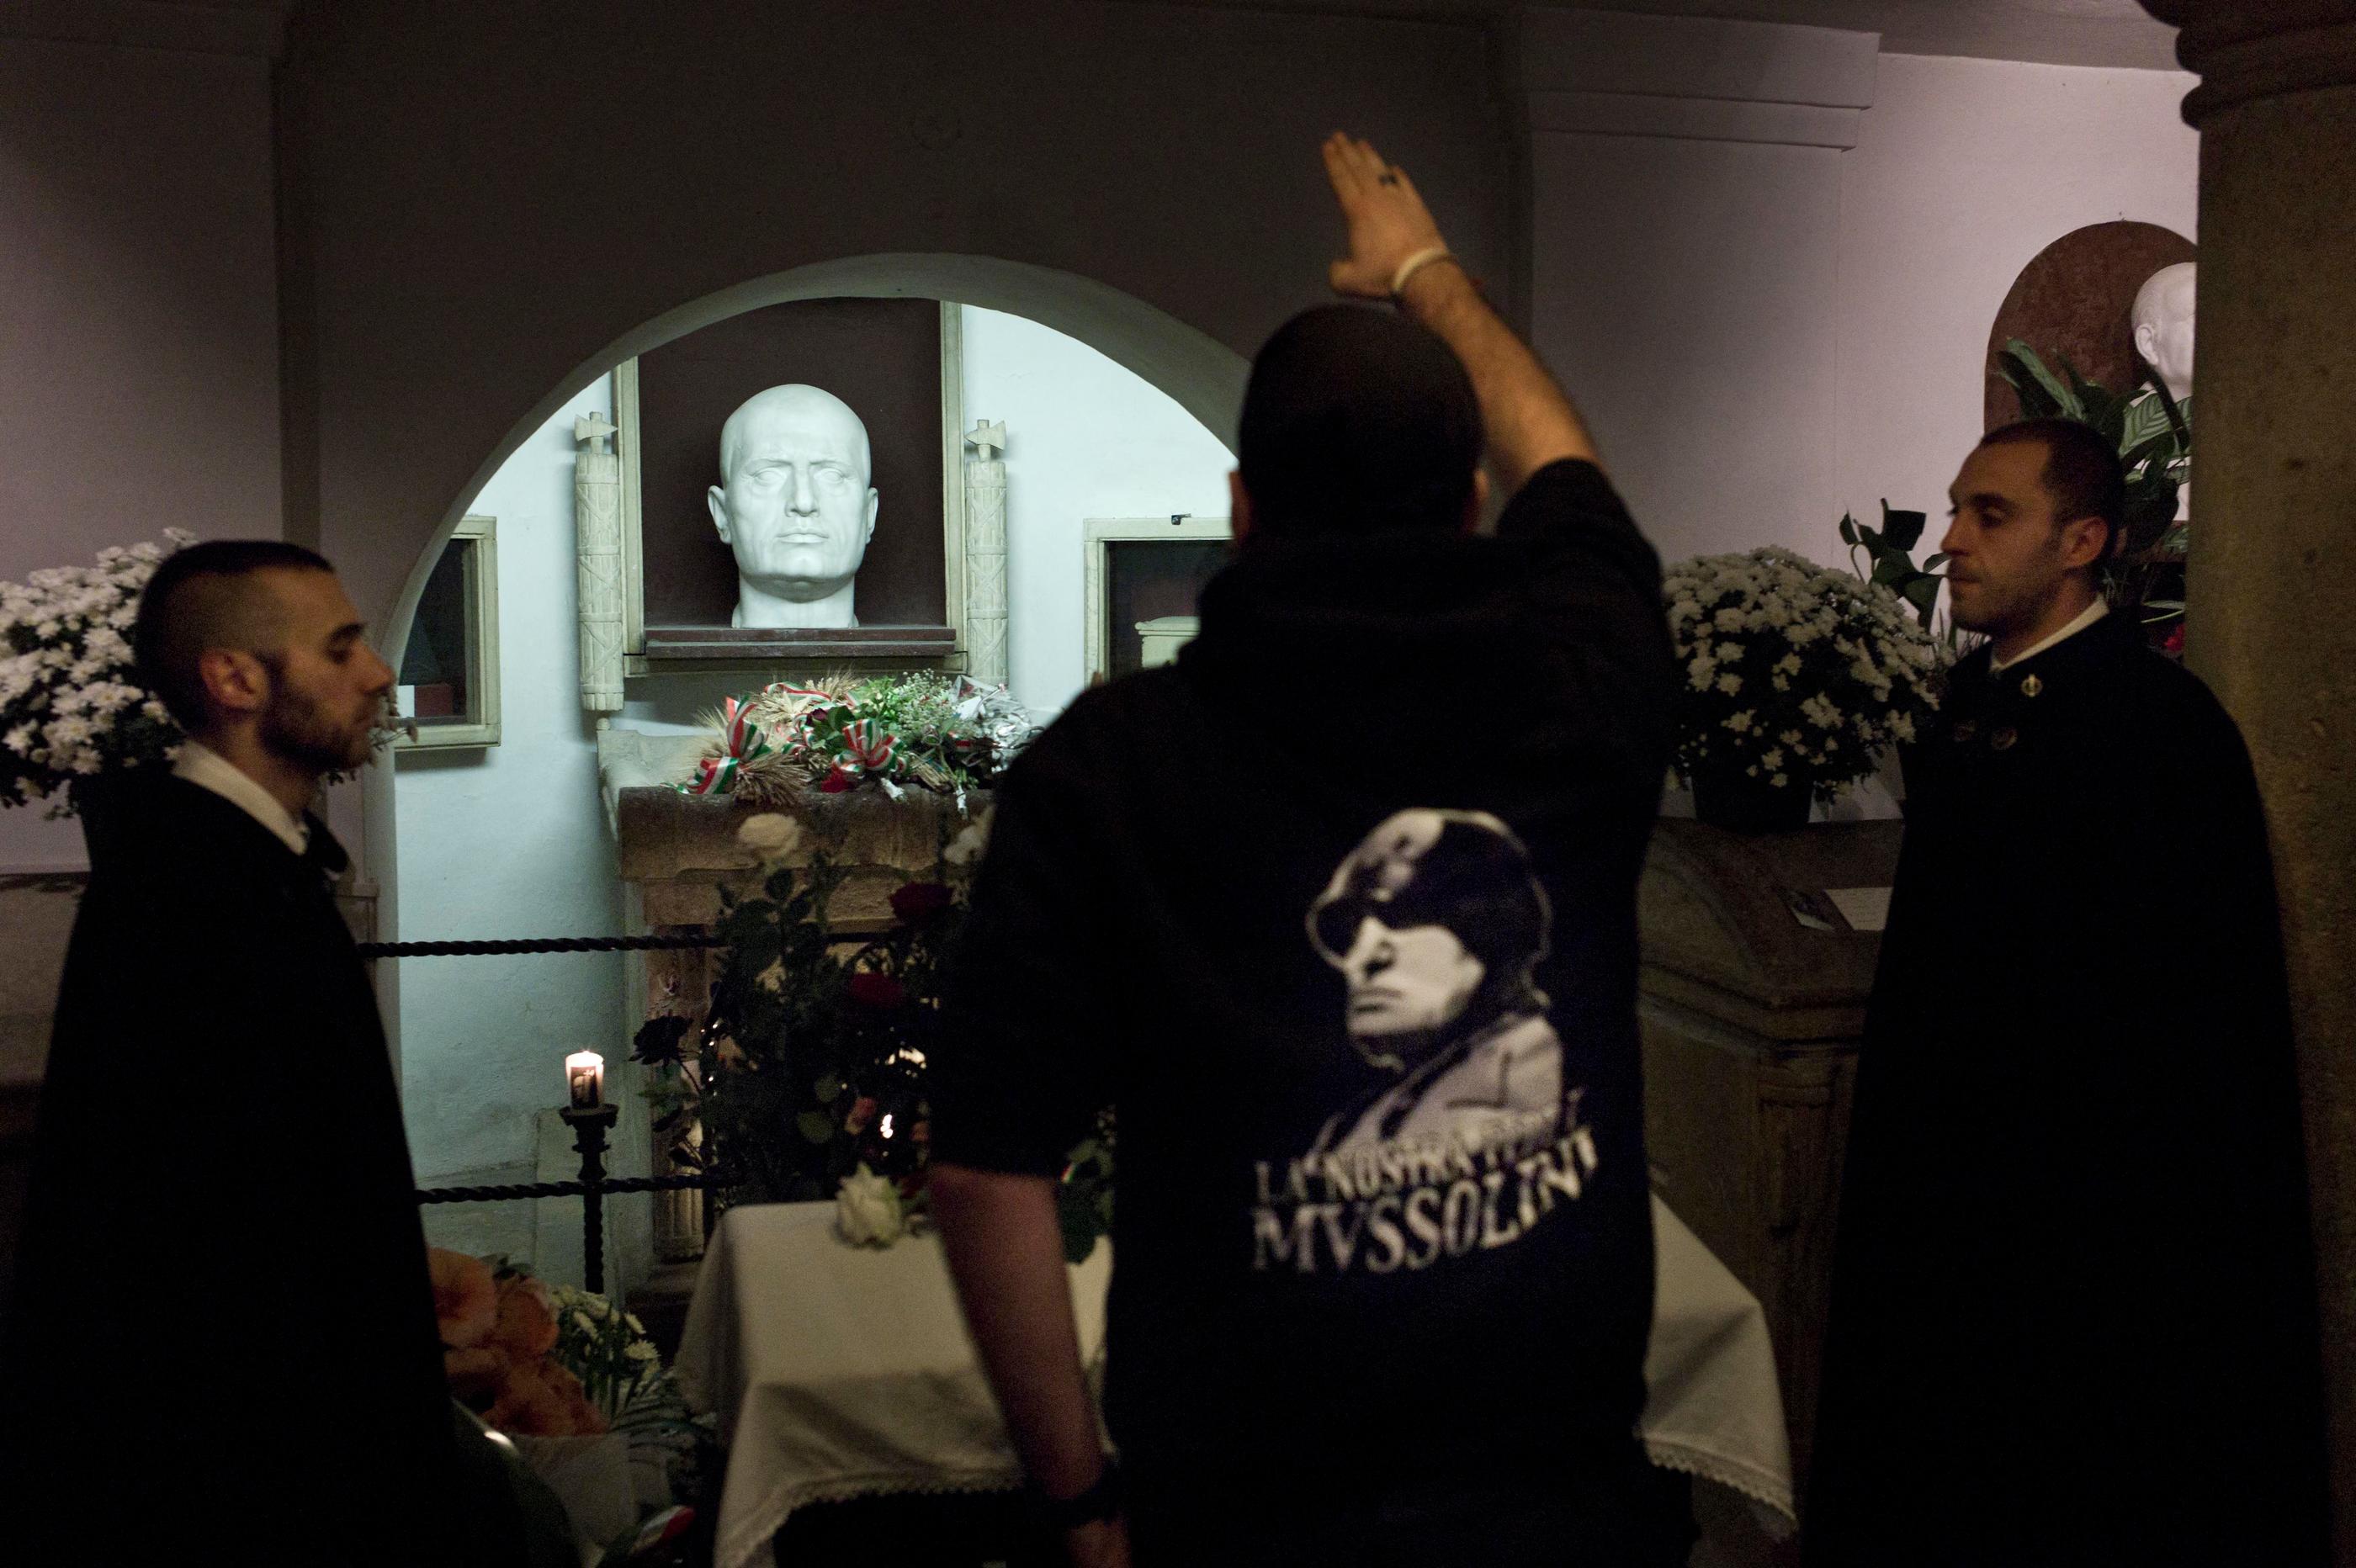 Predappio, ville de 6 000 habitants où Benito Mussolini est né et où il est enterré (ici son tombeau, en 2012), est un musée à ciel ouvert qui connaît, selon l’office de tourisme, «un afflux notable depuis Pâque » de nostalgiques ou militants d’extrême droite. ABACAPRESS.COM/Gianluca Panella/Milestone